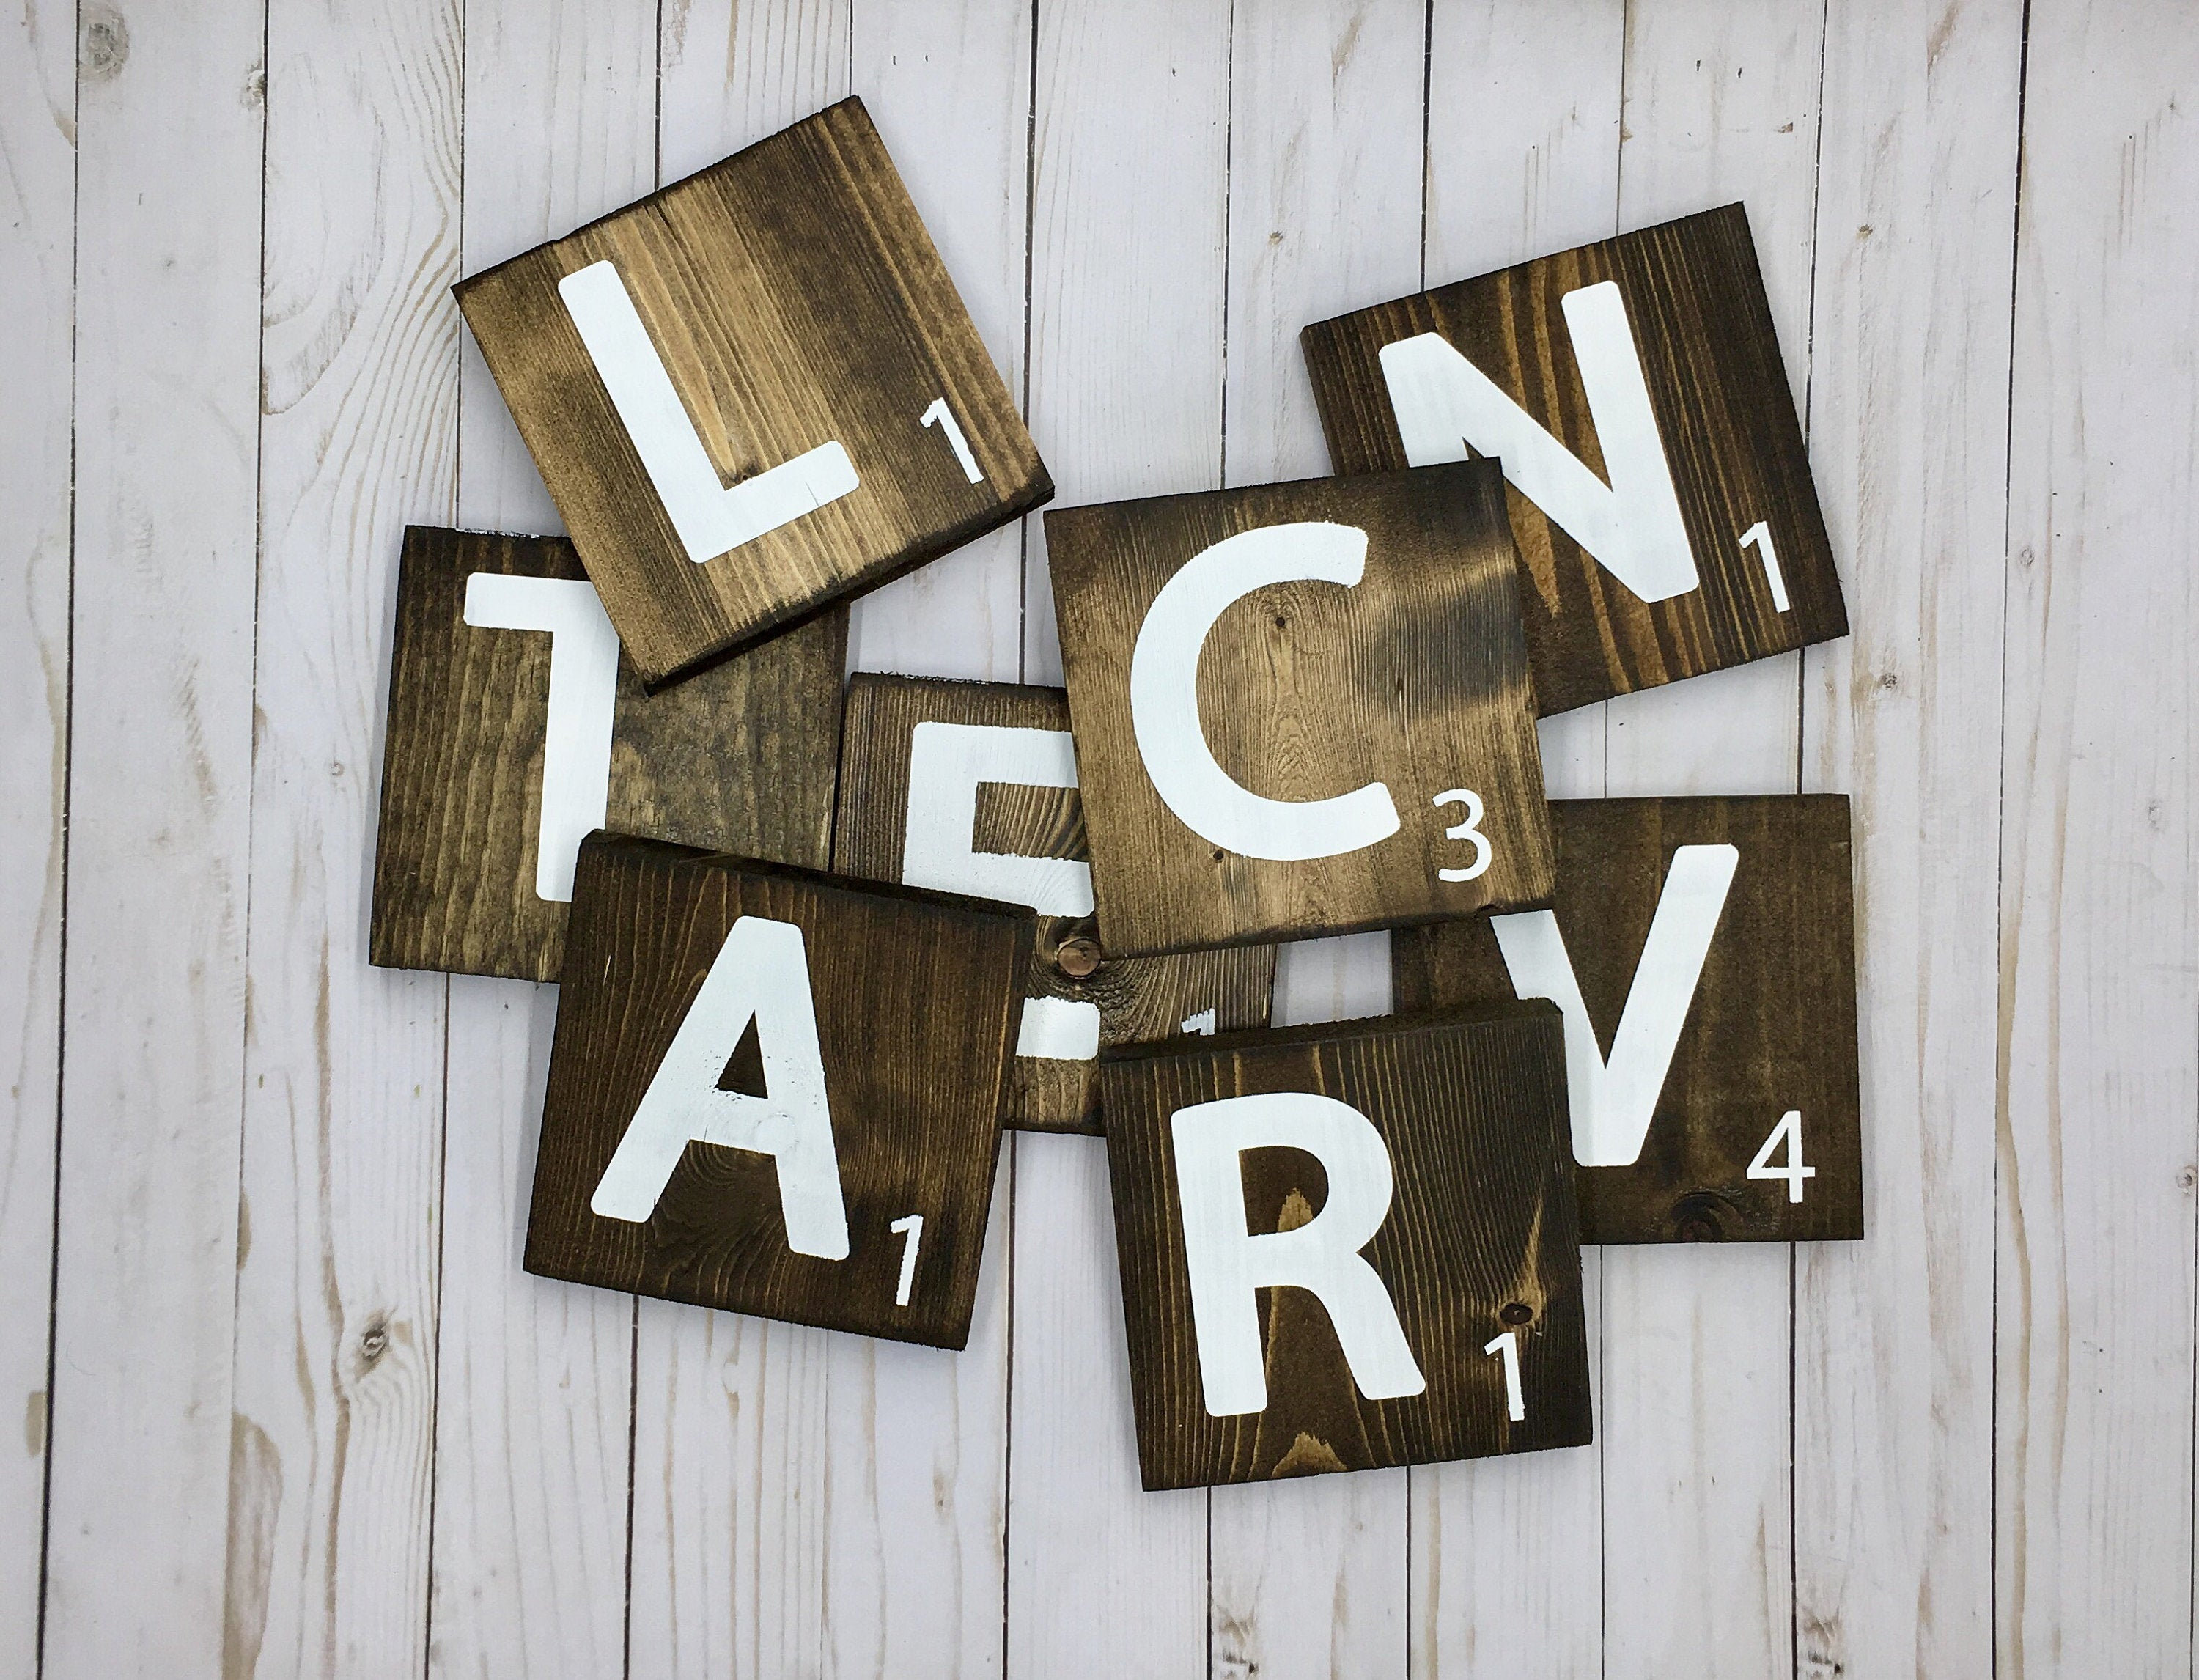 Large Scrabble Tile - 3.5 x 3.5 Inch Tiles - Large Wood Scrabble Letter -  Scrabble Tiles For Wall - Scrabble Home Decor